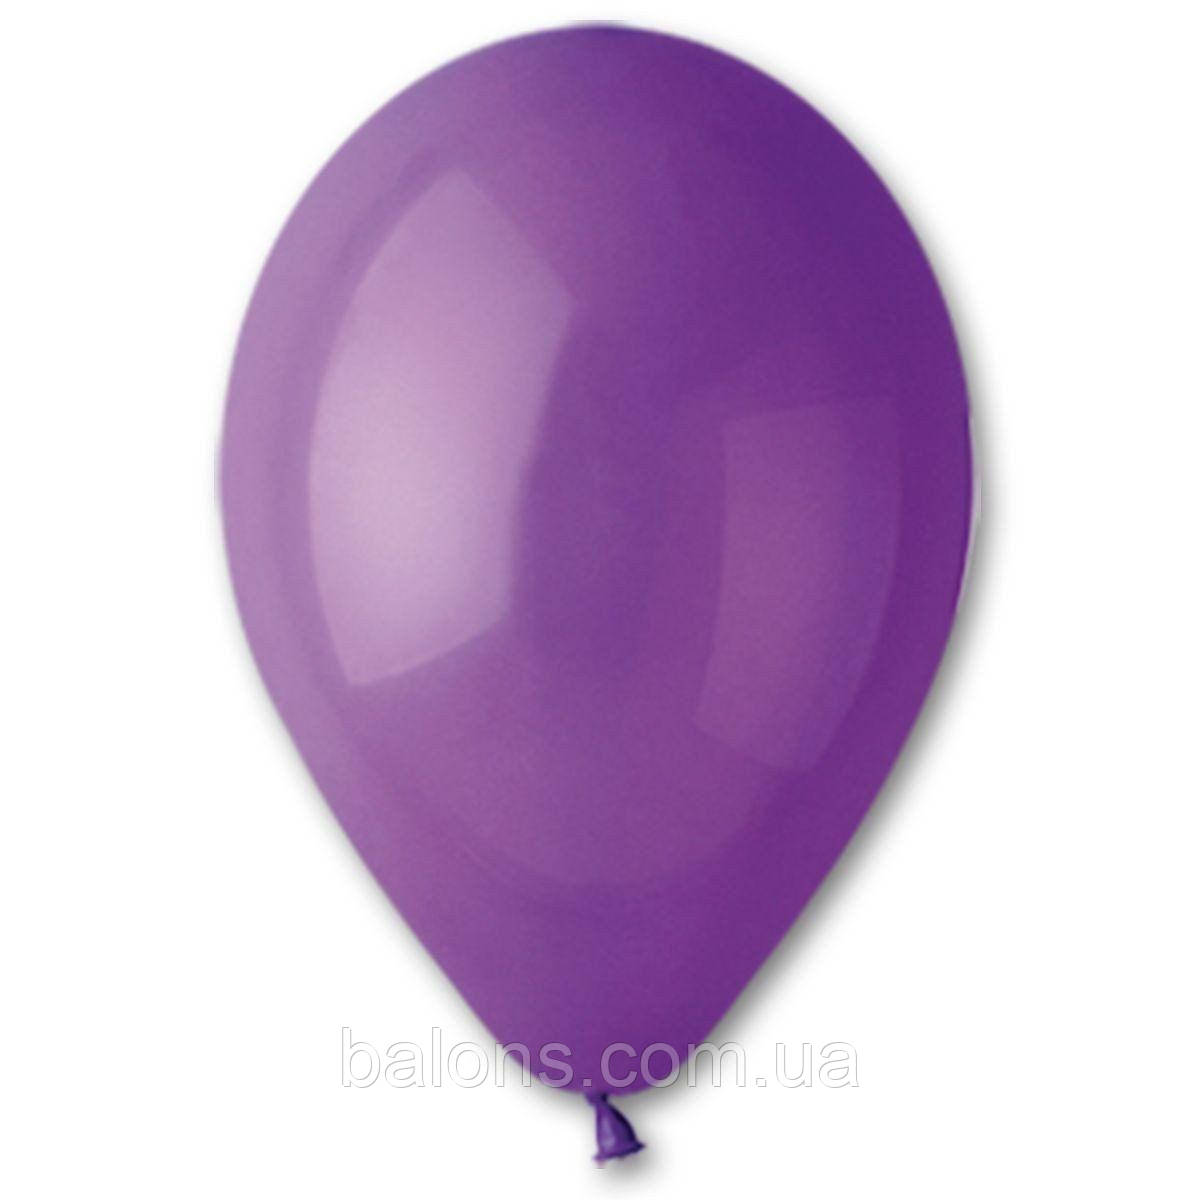 Повітряні кулі 5"/08 (13 см) фіолетовий пастель